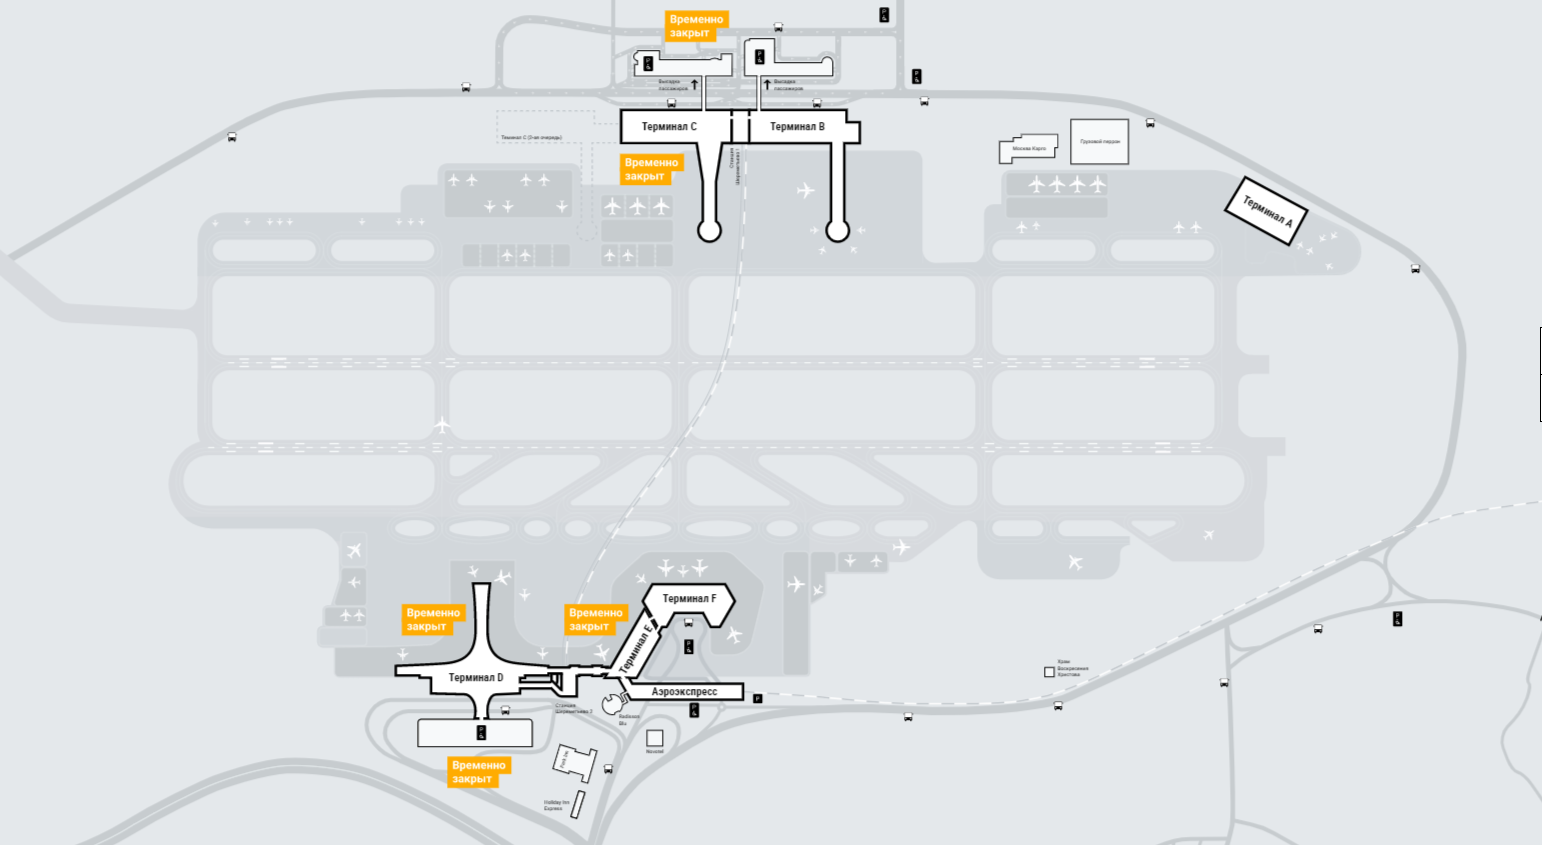 Посадка в шереметьево терминал в. Схема аэропорта Шереметьево с терминалами. План Шереметьево аэропорт схема. План аэропорта Шереметьево терминал b. План аэропорта Шереметьево с терминалами.